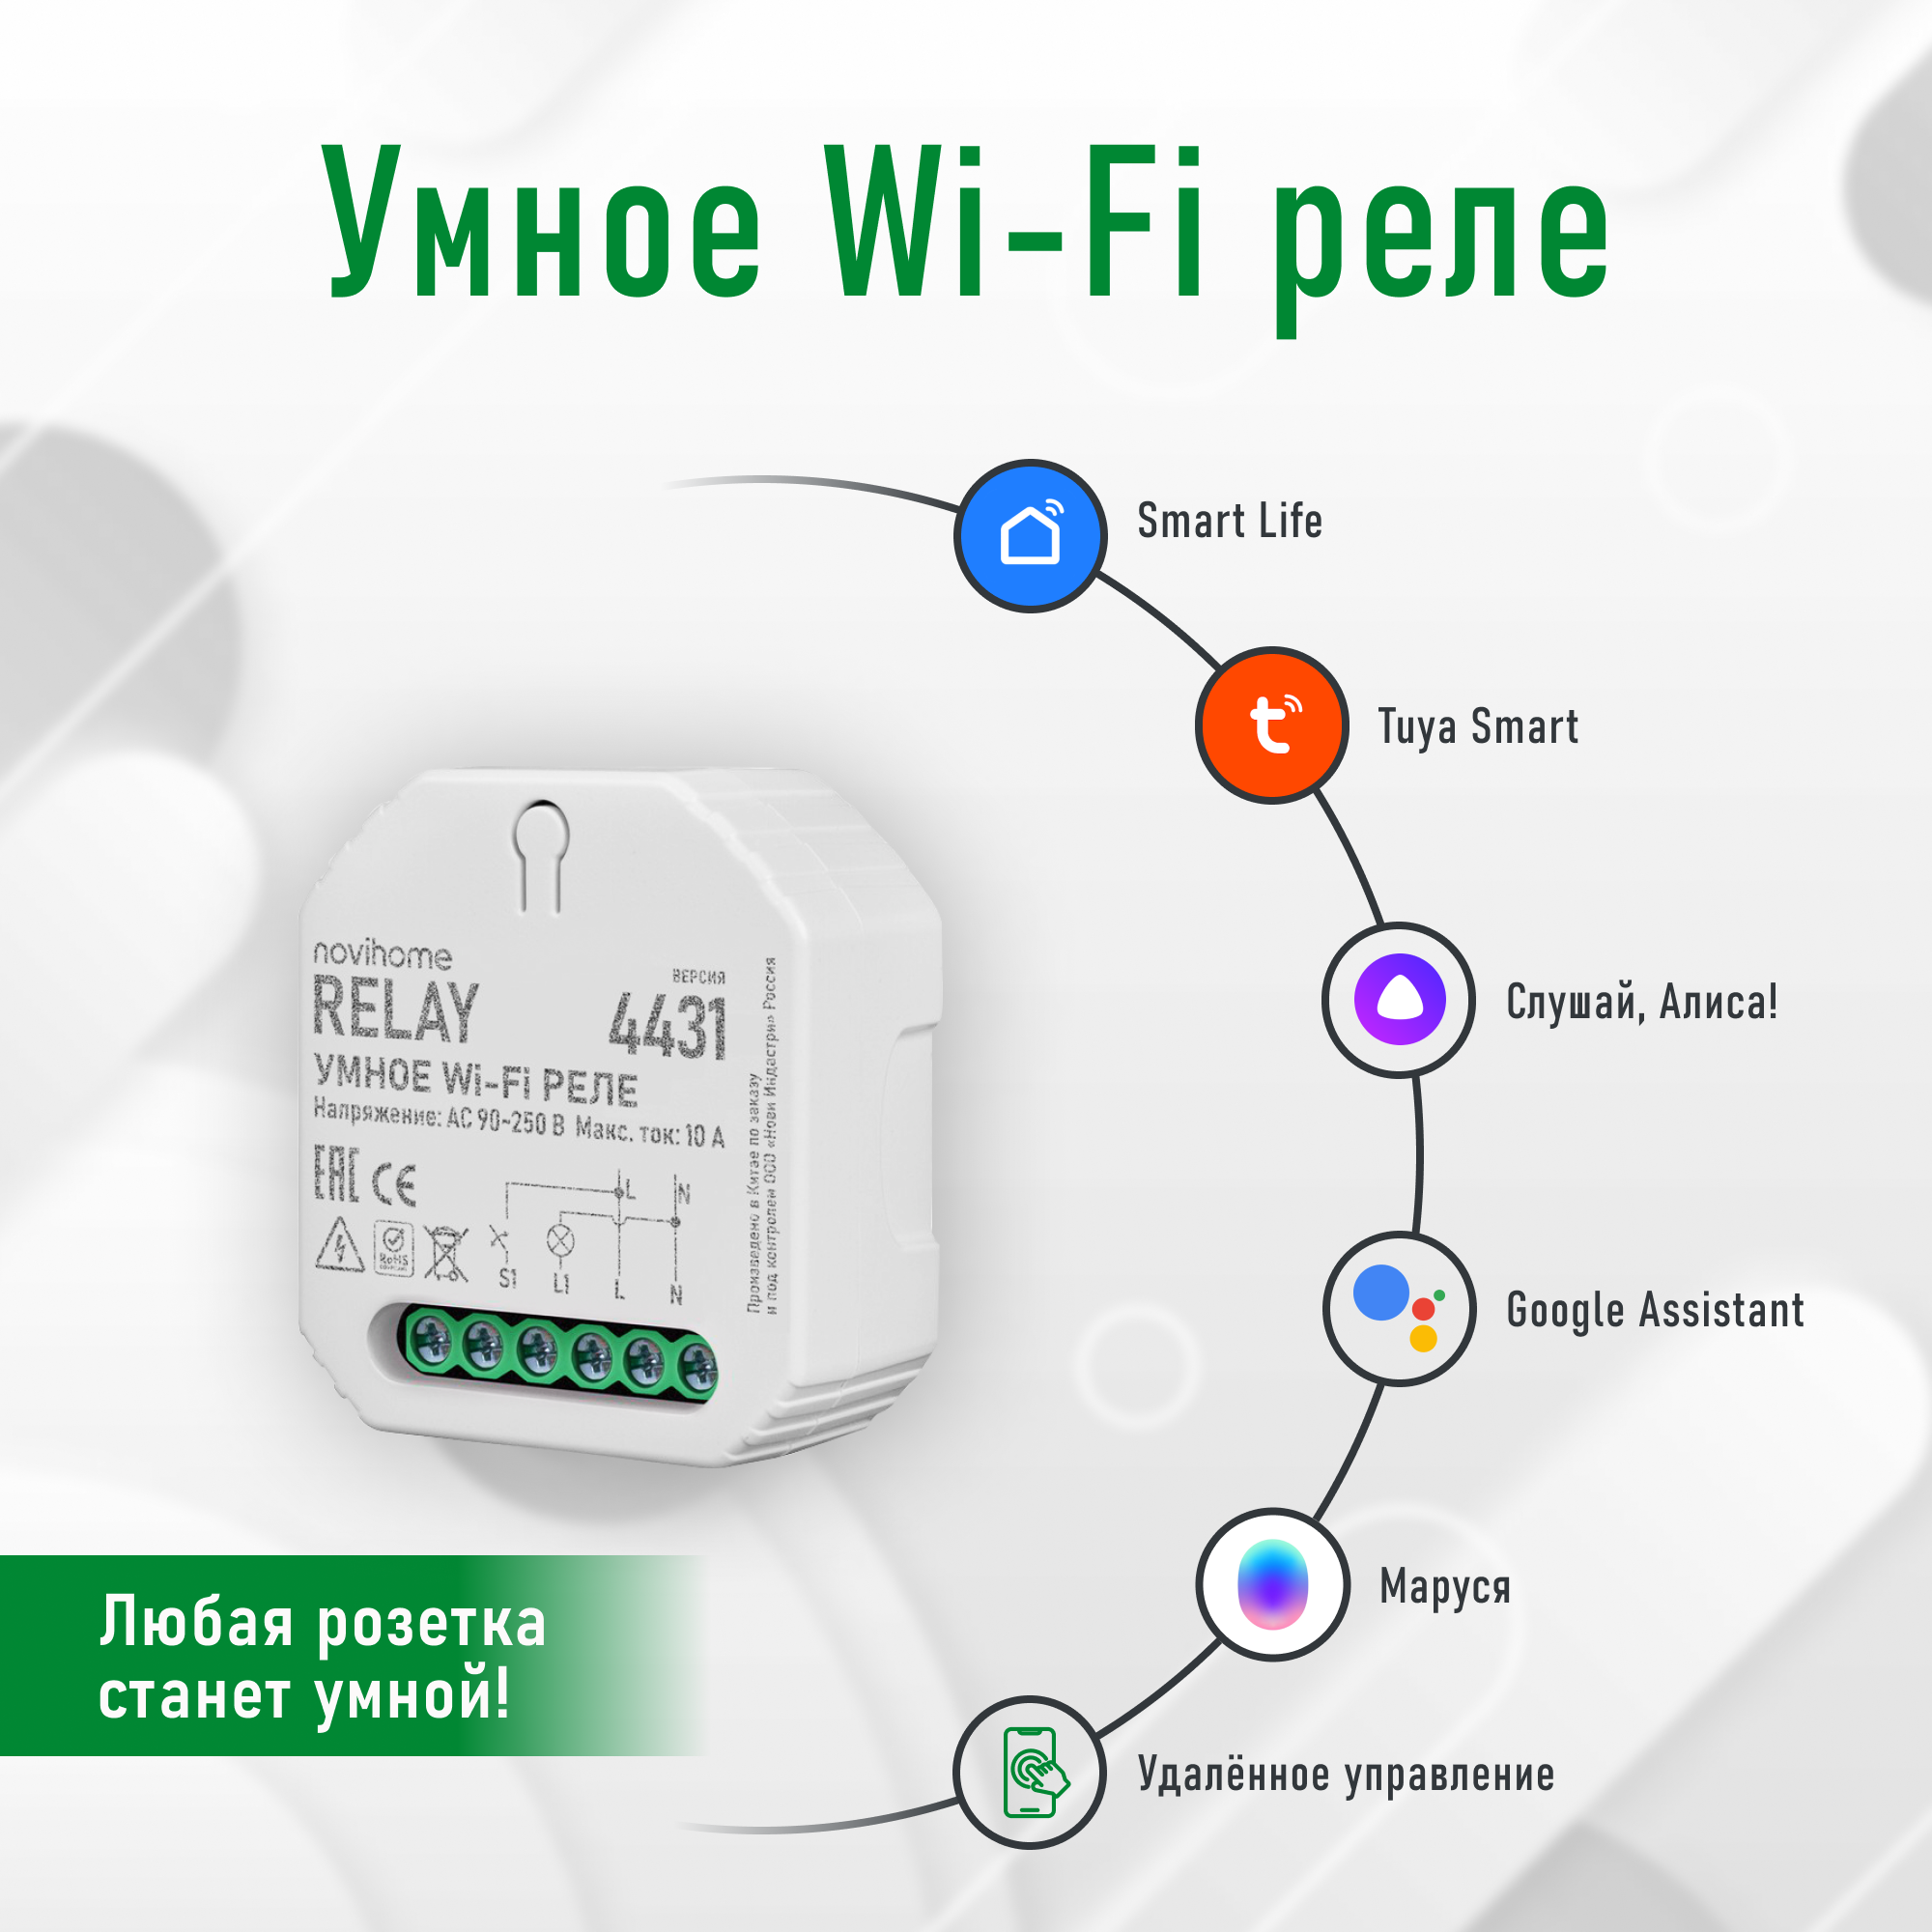 Умное Wi-Fi реле Novihome RELAY. Поддержка Smart Life (Tuya), Яндекс Умный дом (Алиса), VK Маруся